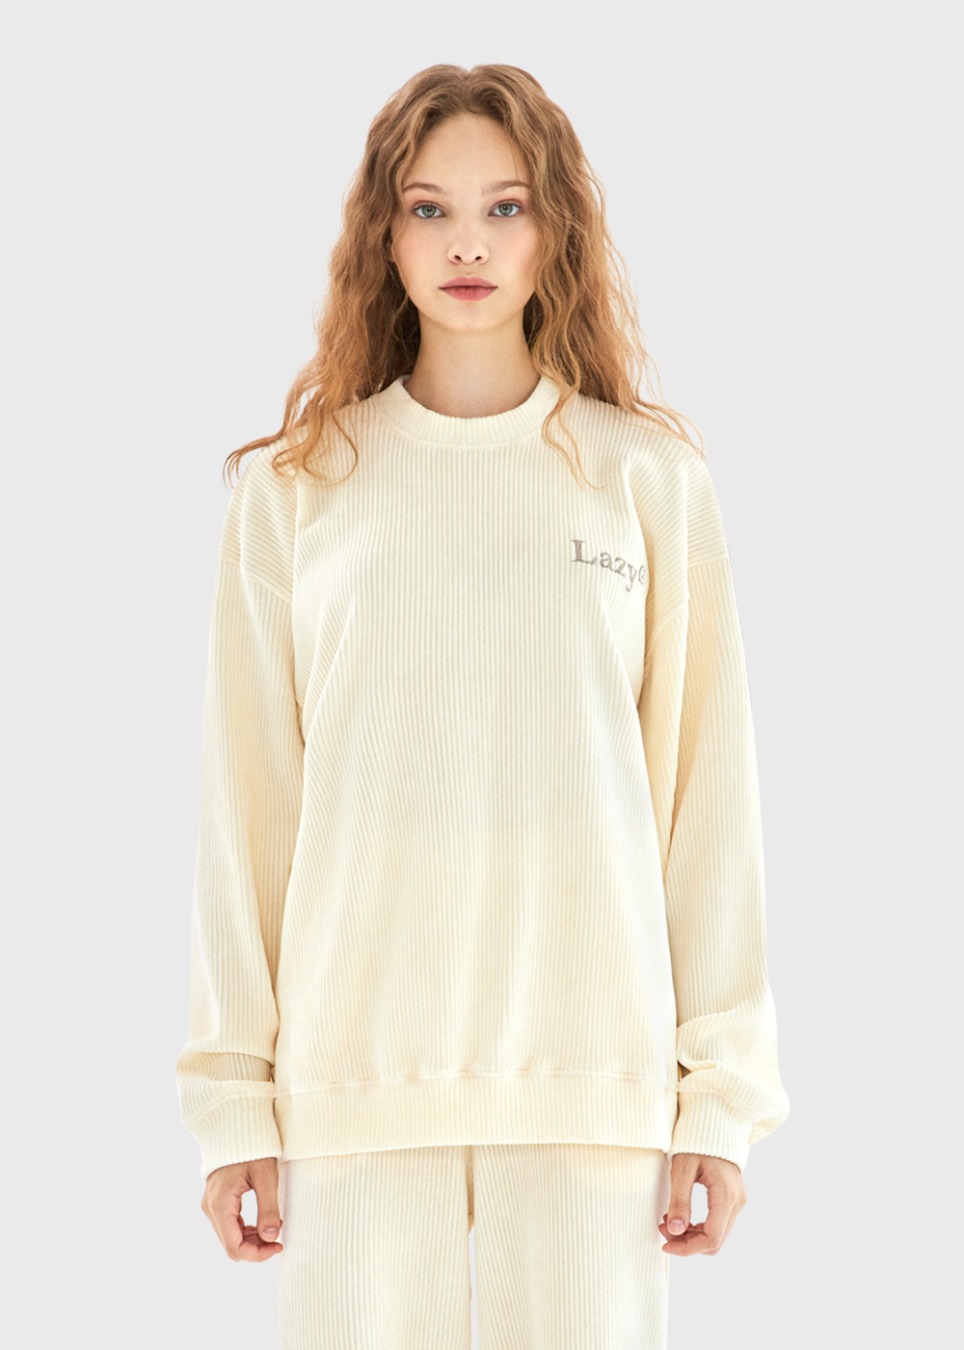 Corduroy Sweatshirt : Cream